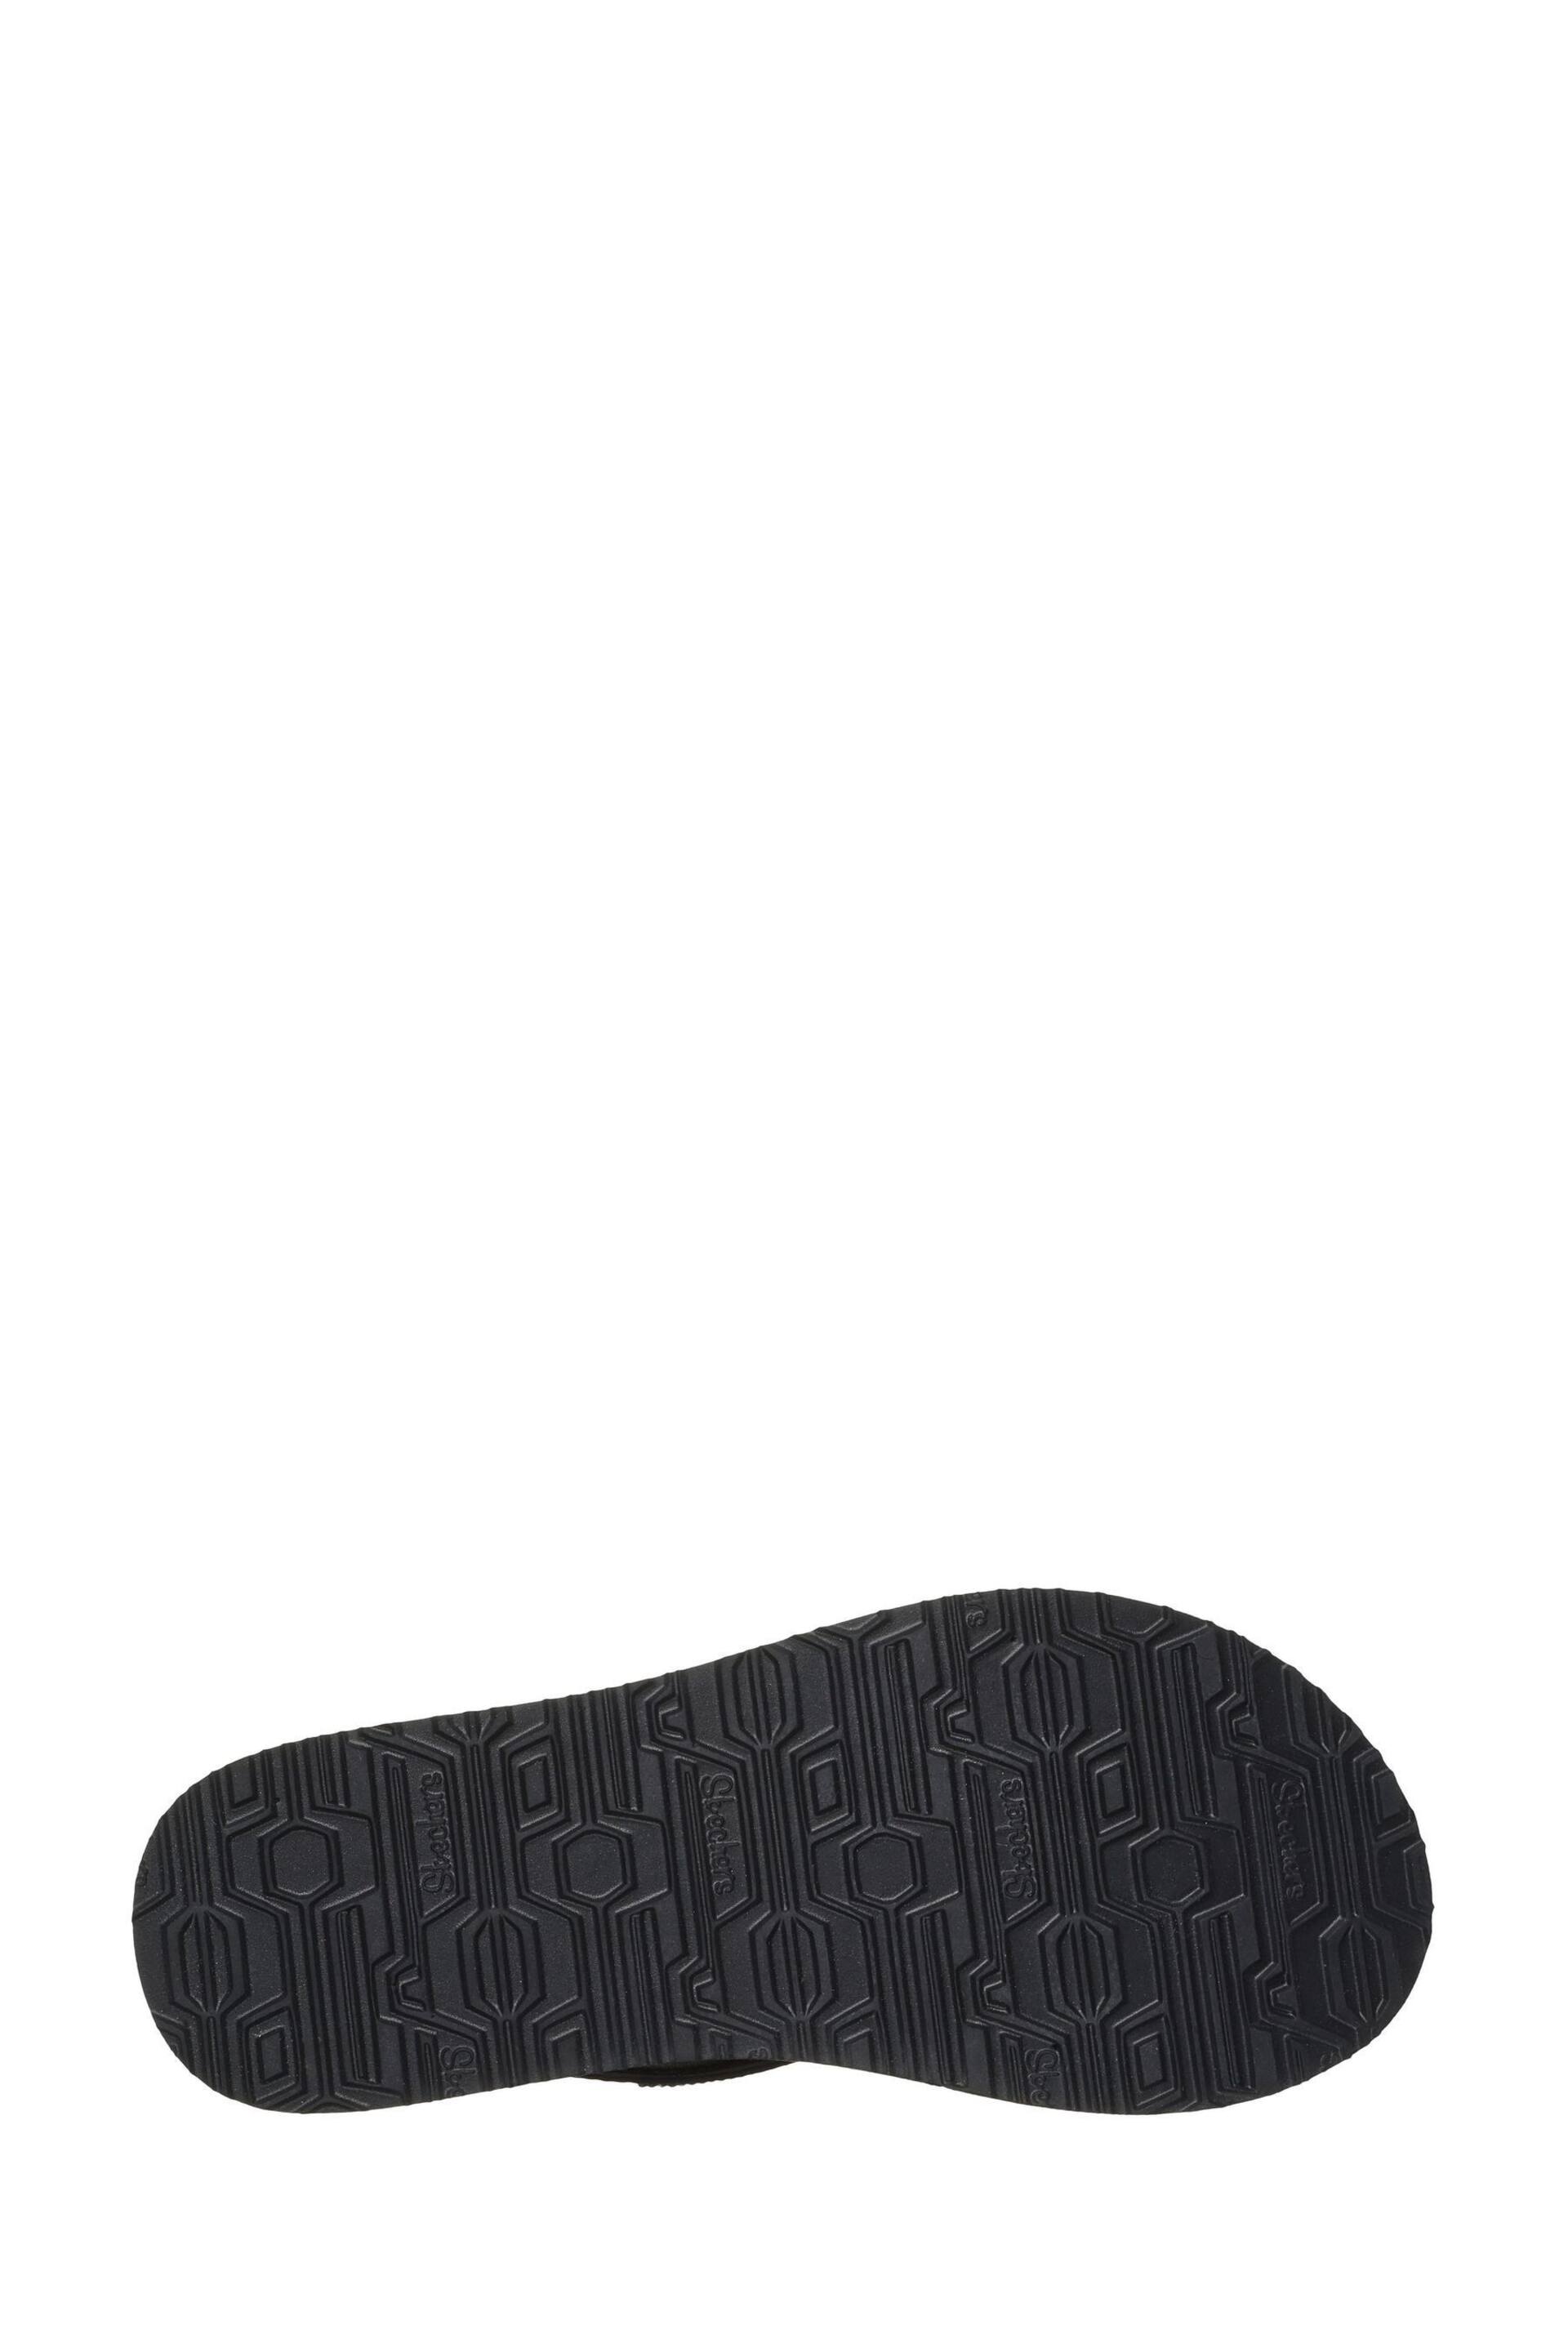 Skechers Light Black Meditation Rockstar Sandals - Image 4 of 5